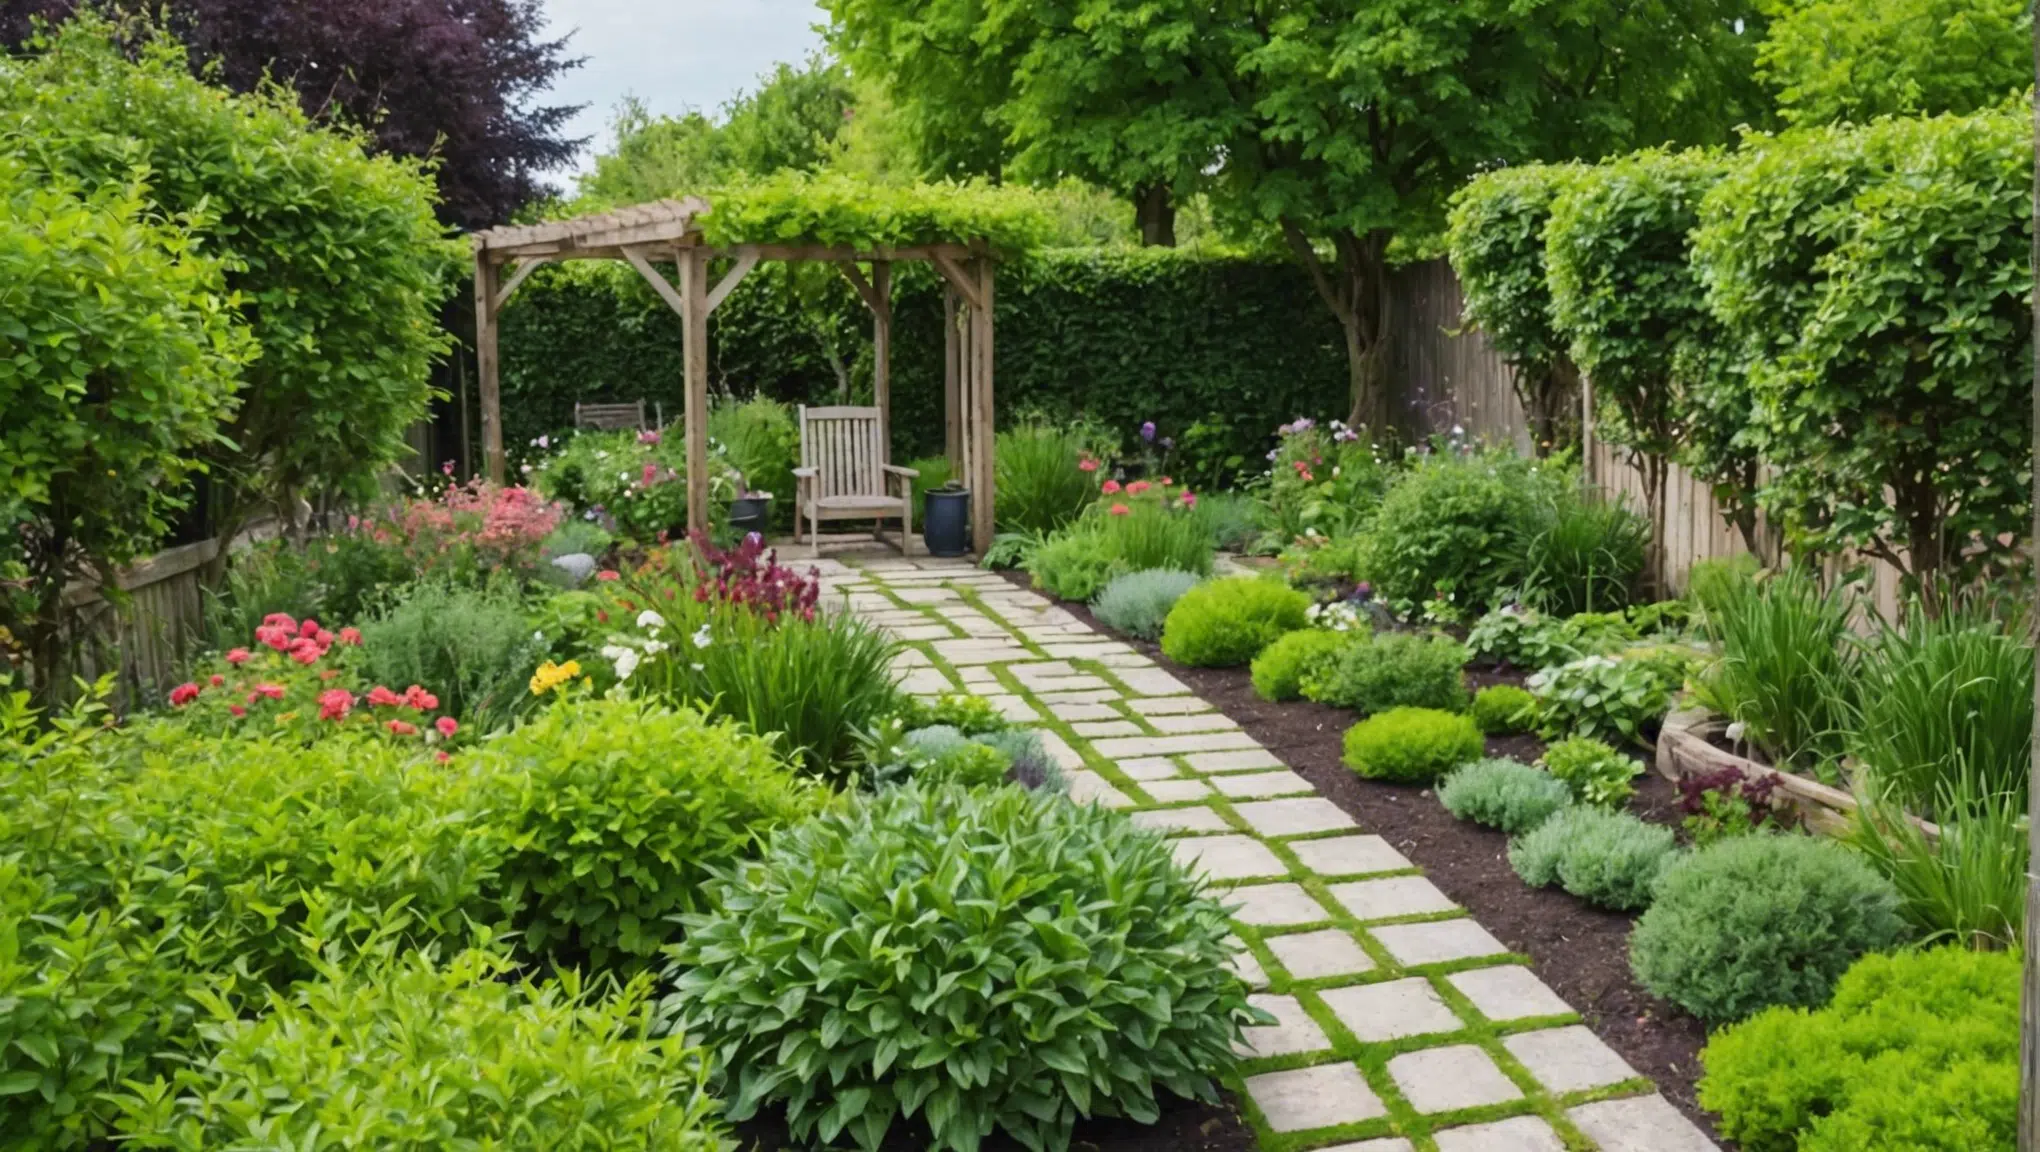 découvrez comment transformer un petit jardin partagé en un véritable paradis verdoyant en 5 étapes simples avec nos astuces pratiques et écologiques.